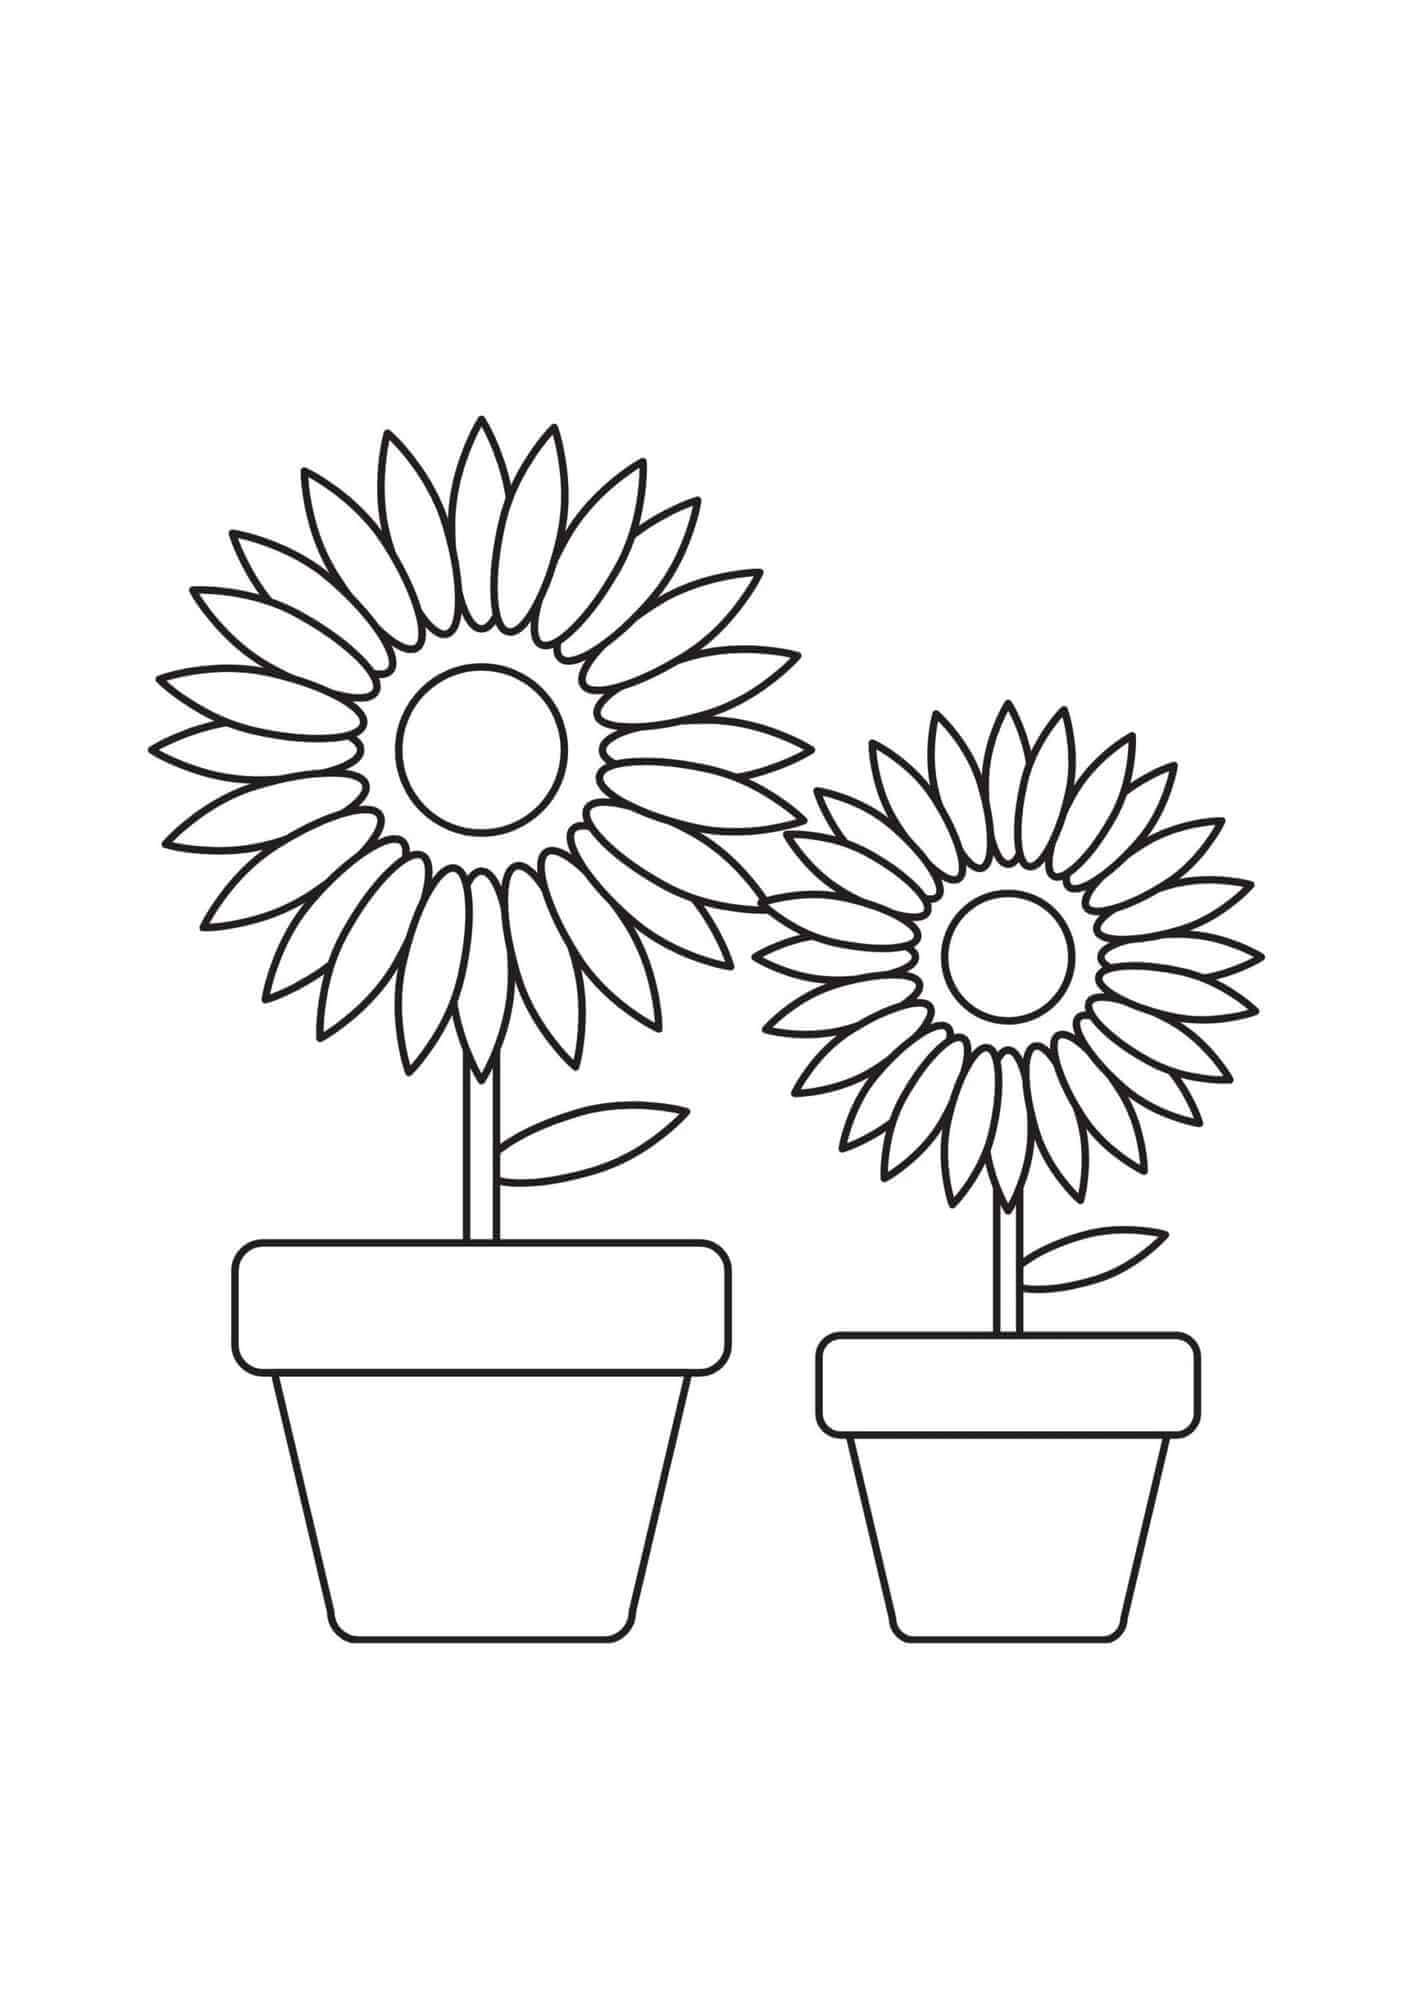 Zwei Sonnenblumen von Vasen